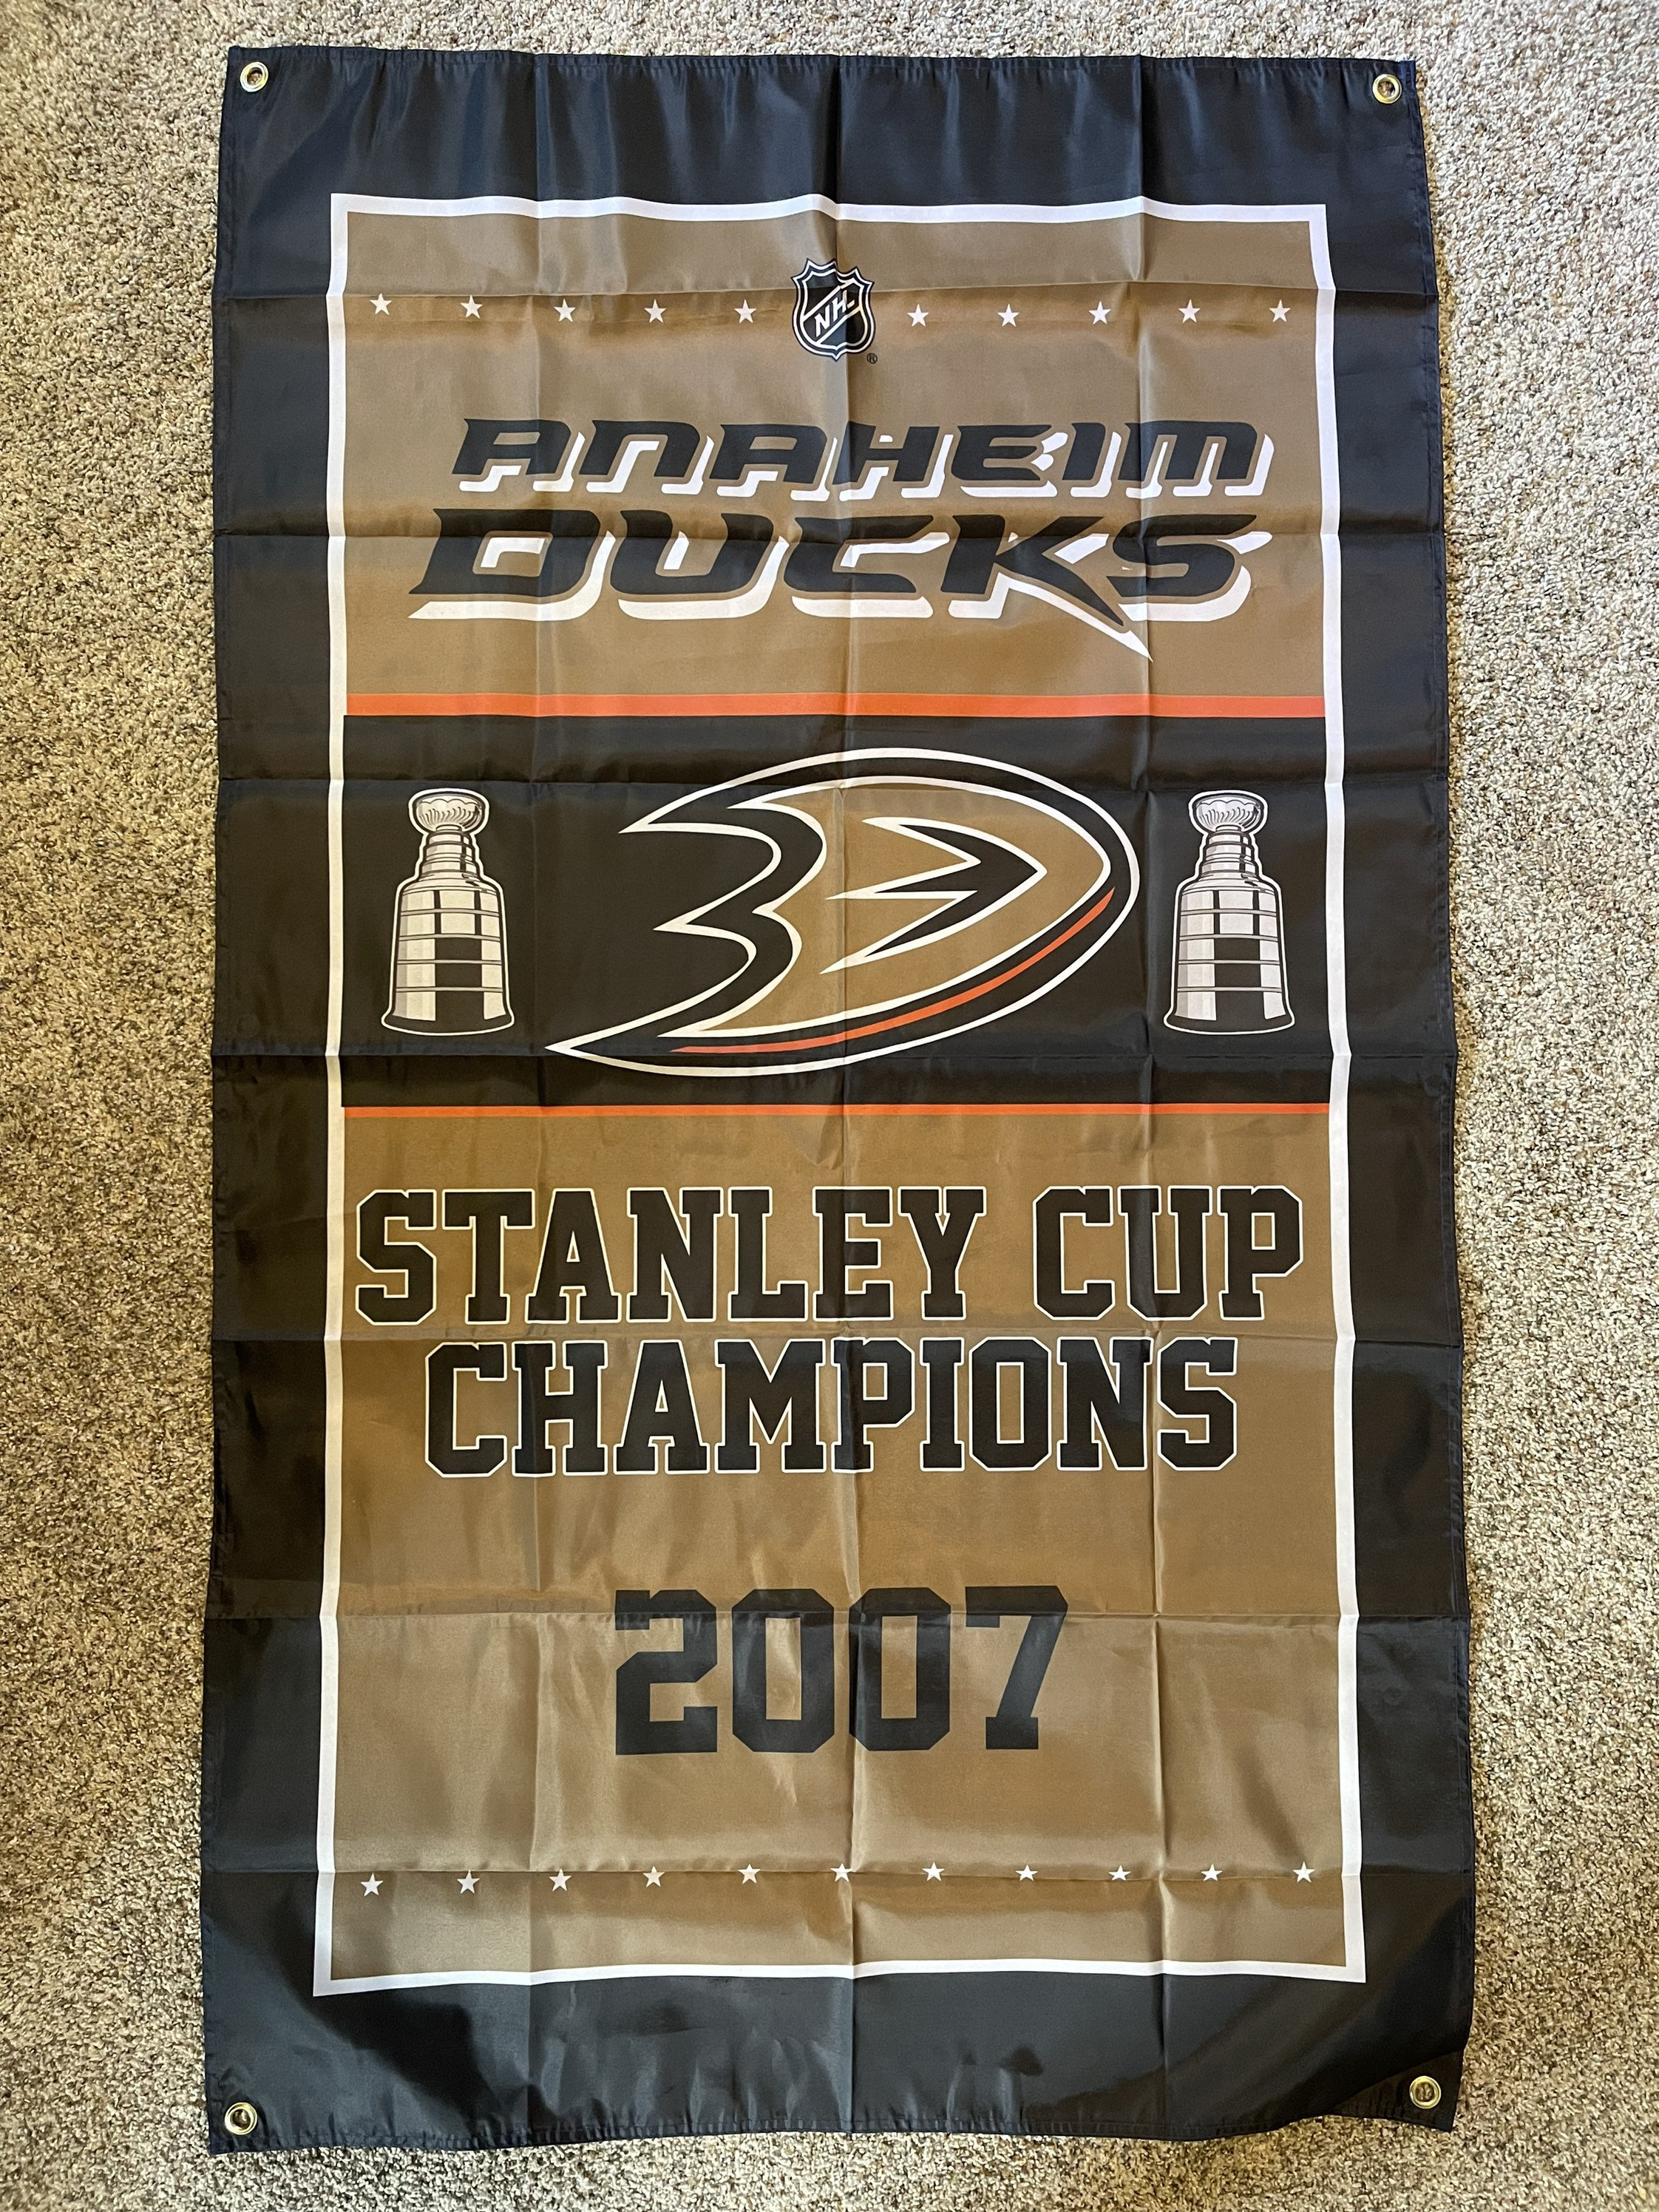 Anaheim Ducks Hockey Poster, Anaheim Ducks in front of skyline